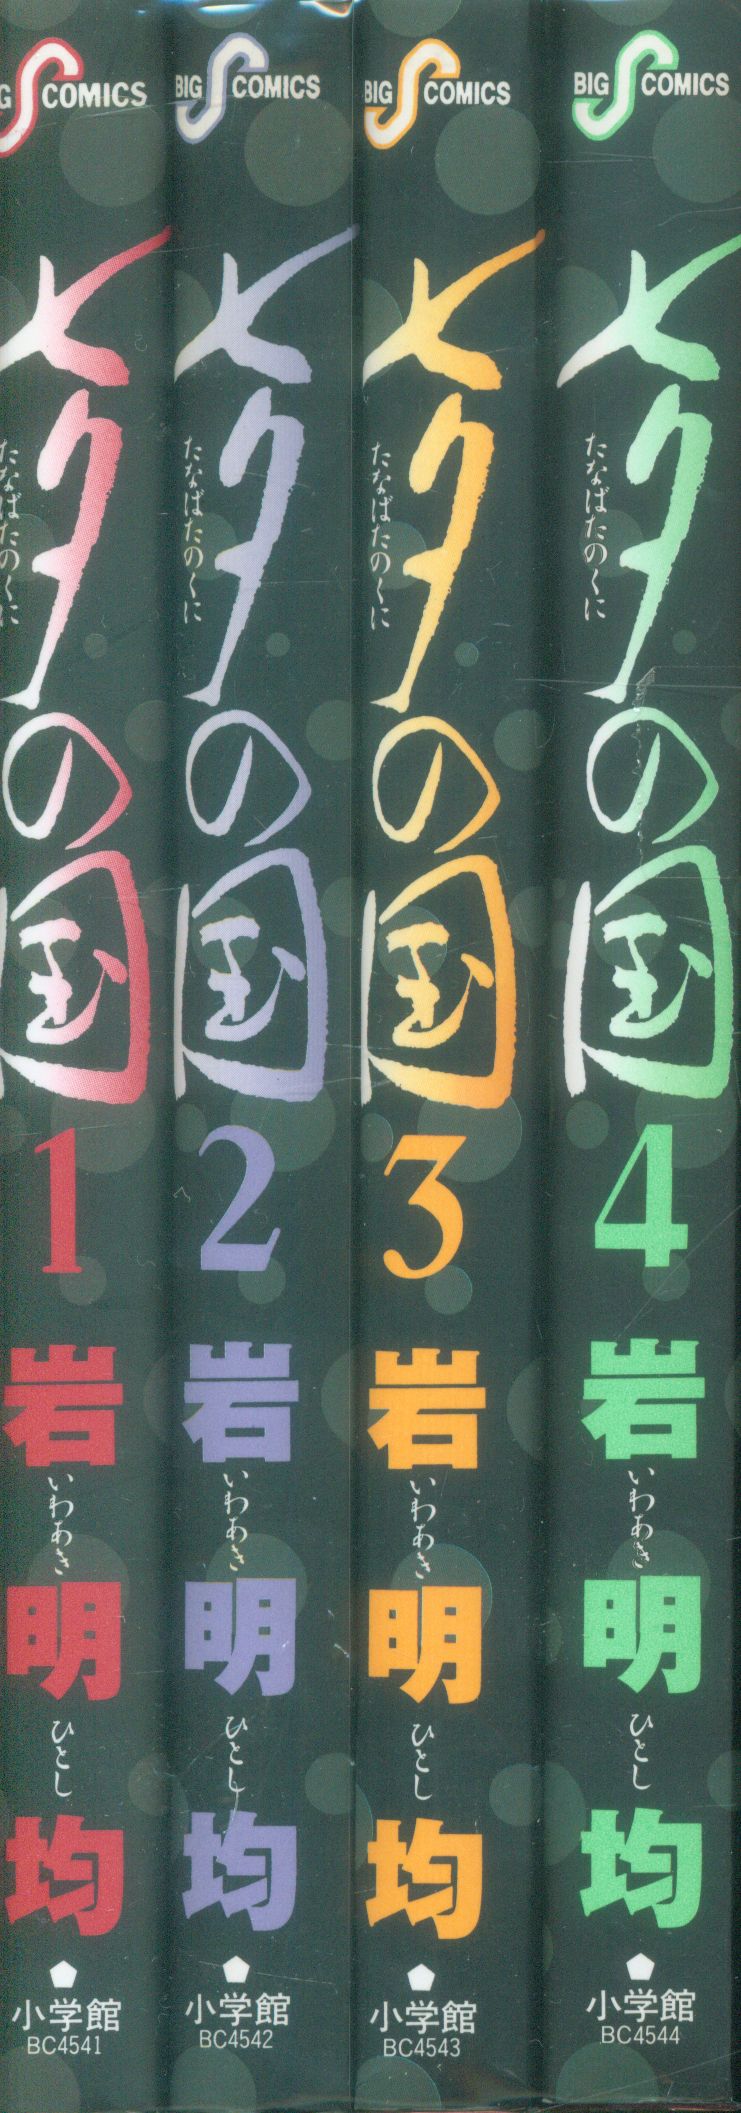 小学館 ビッグコミックス 岩明均 七夕の国 全4巻 再版セット まんだらけ Mandarake